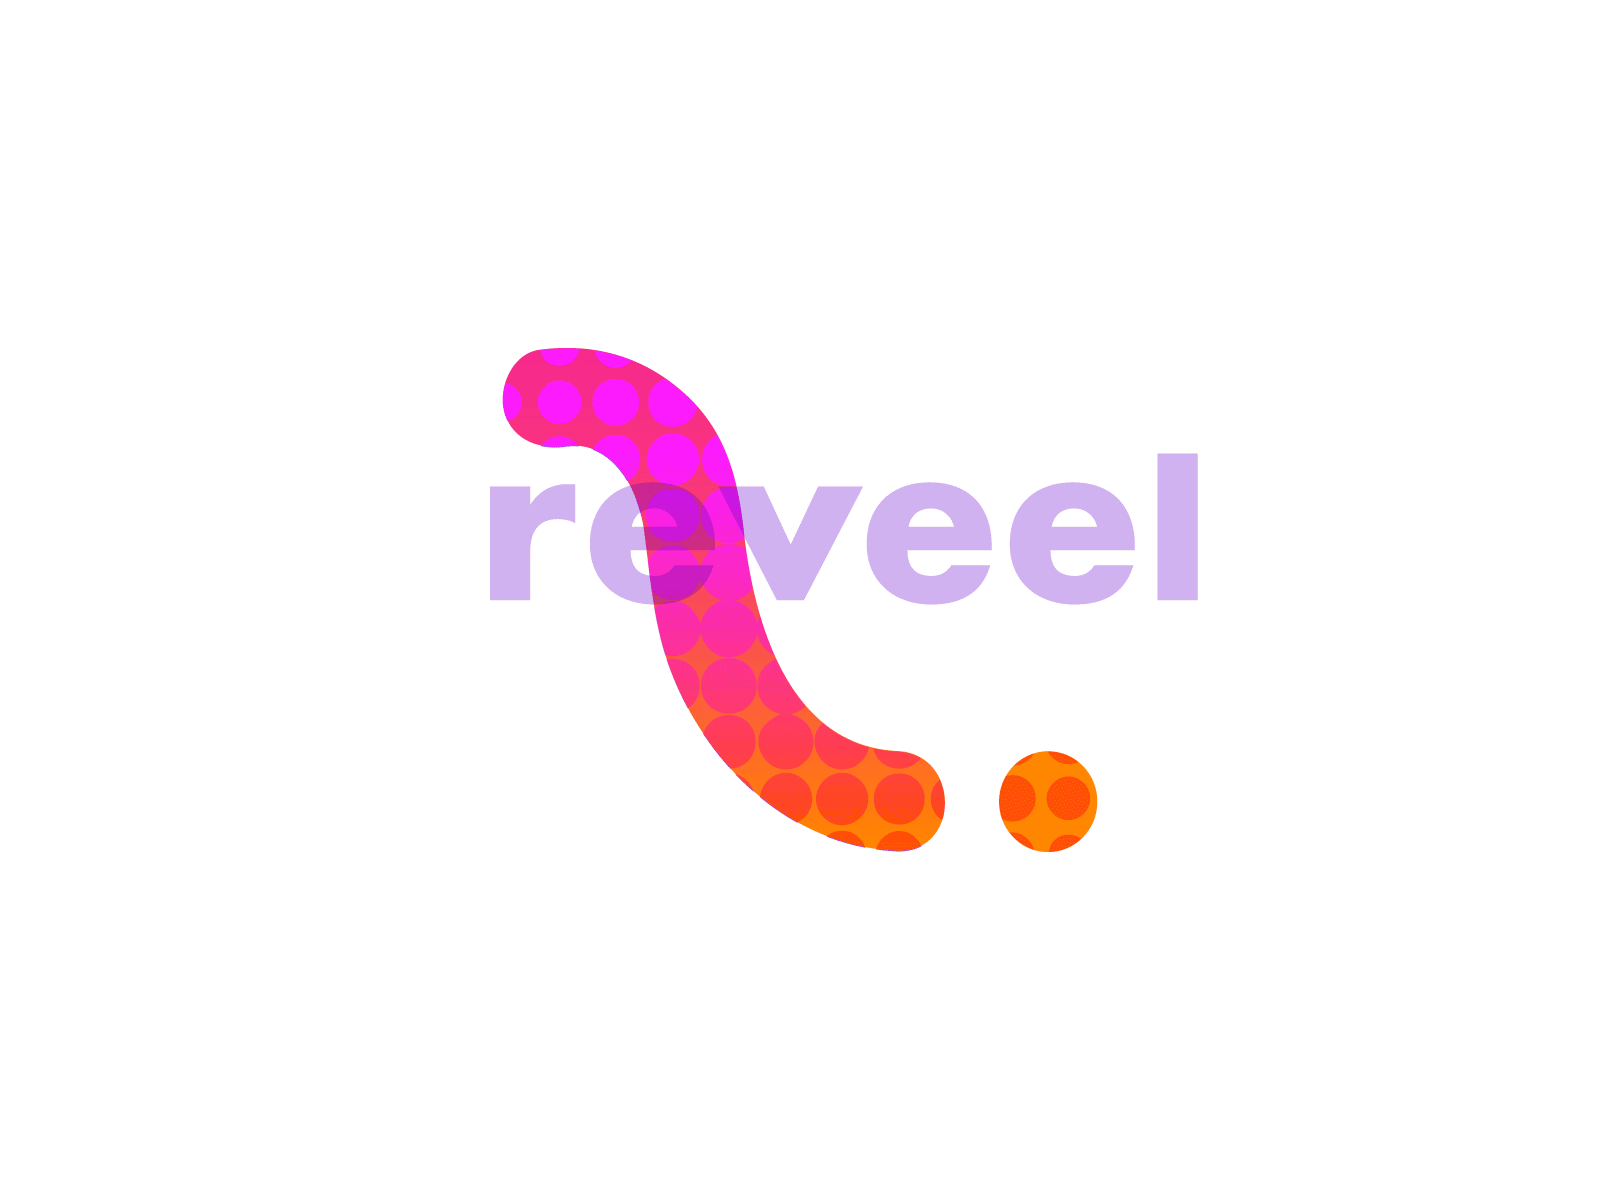 Reveel logo